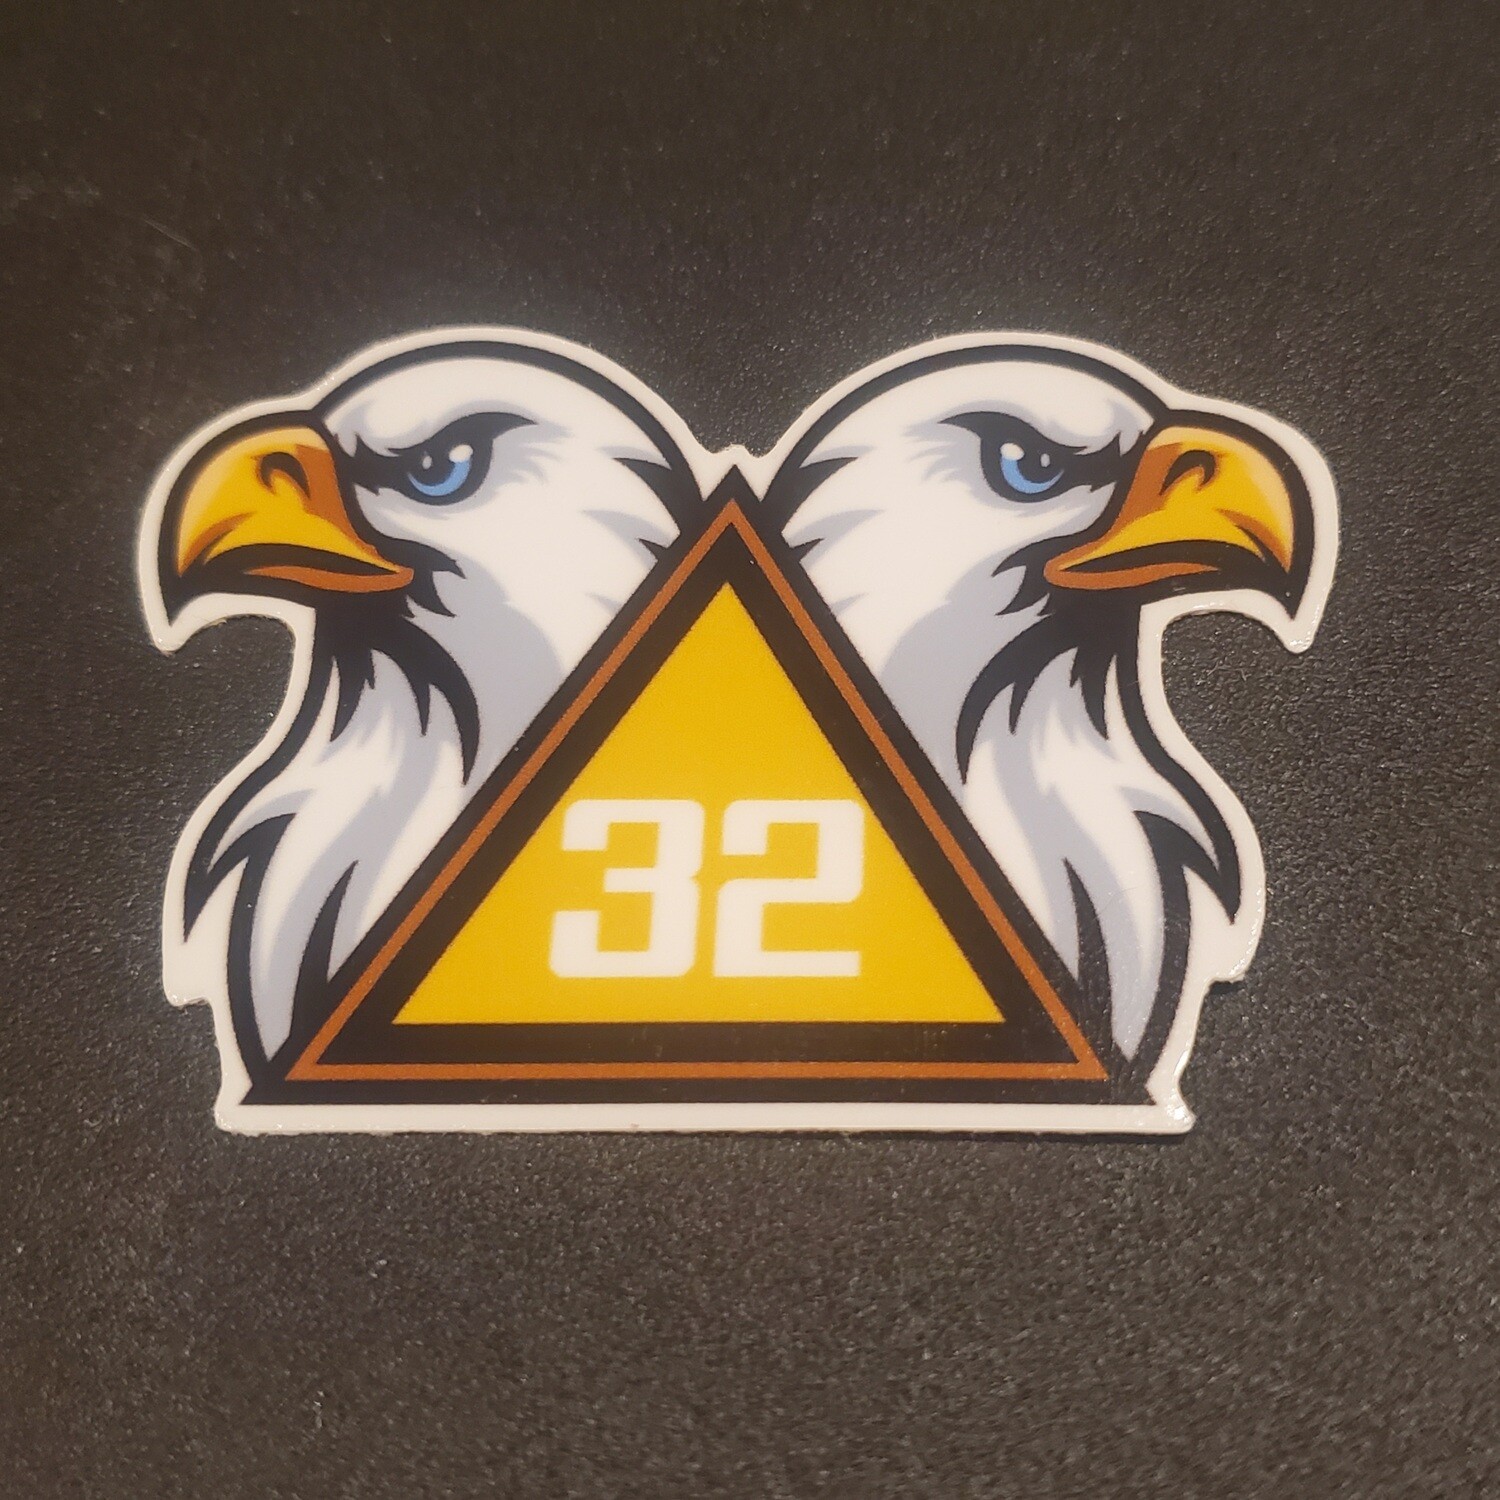 Sticker - Scottish Rite Eagle Head 32°